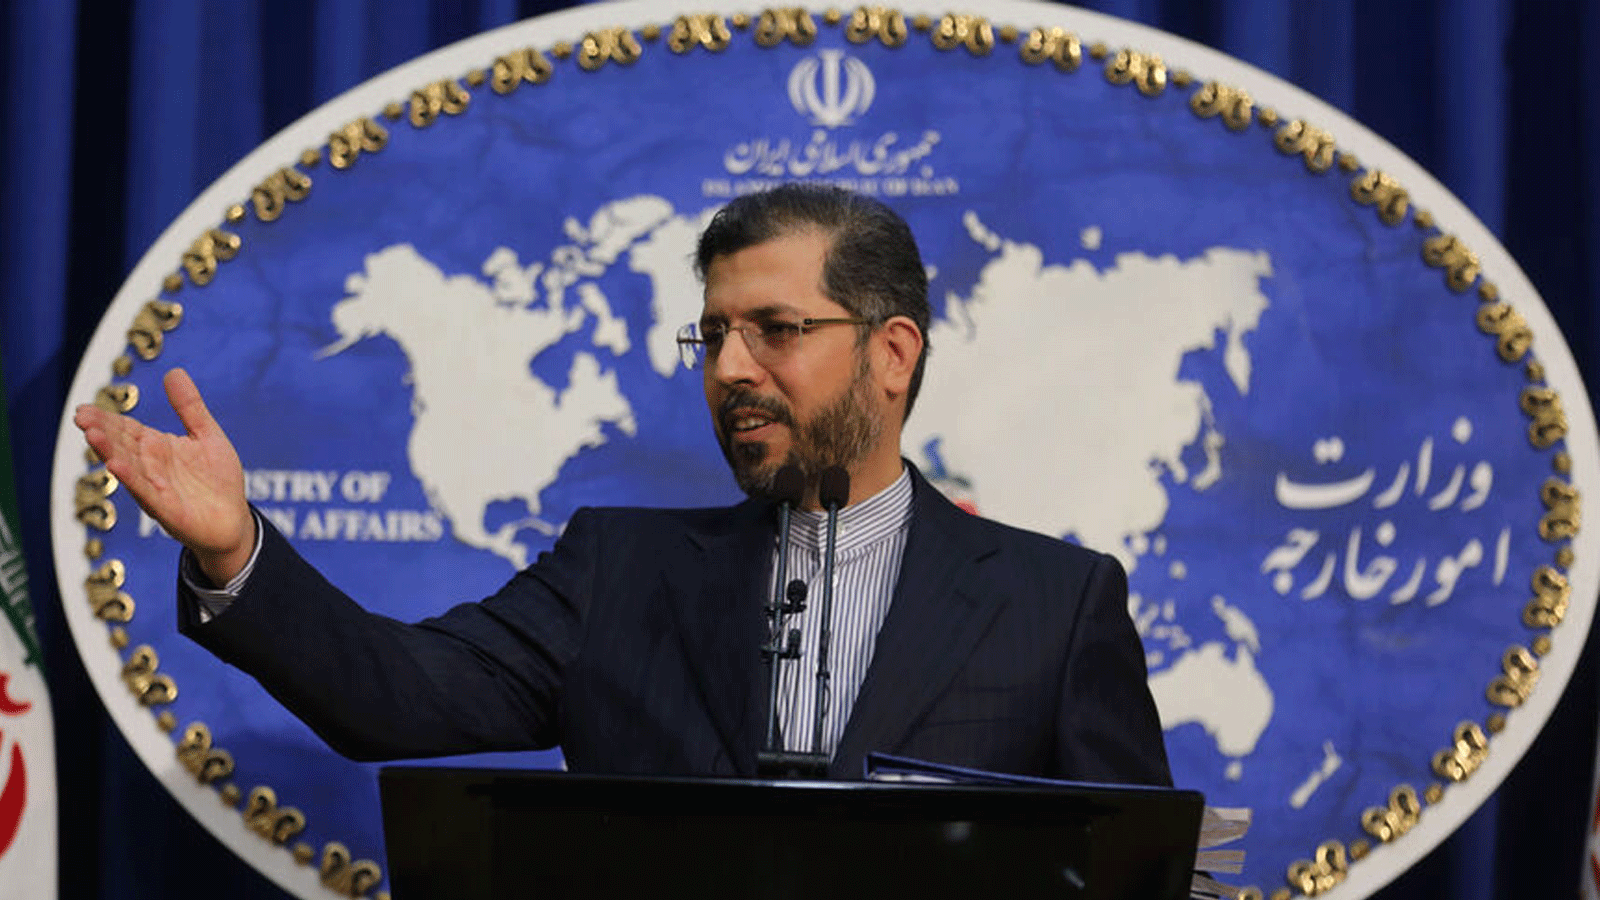 المتحدث باسم وزارة الخارجية الإيرانية سعيد خطيب زاده متحدثاً خلال مؤتمر صحفي في طهران. 22 شباط/ فبراير 2021